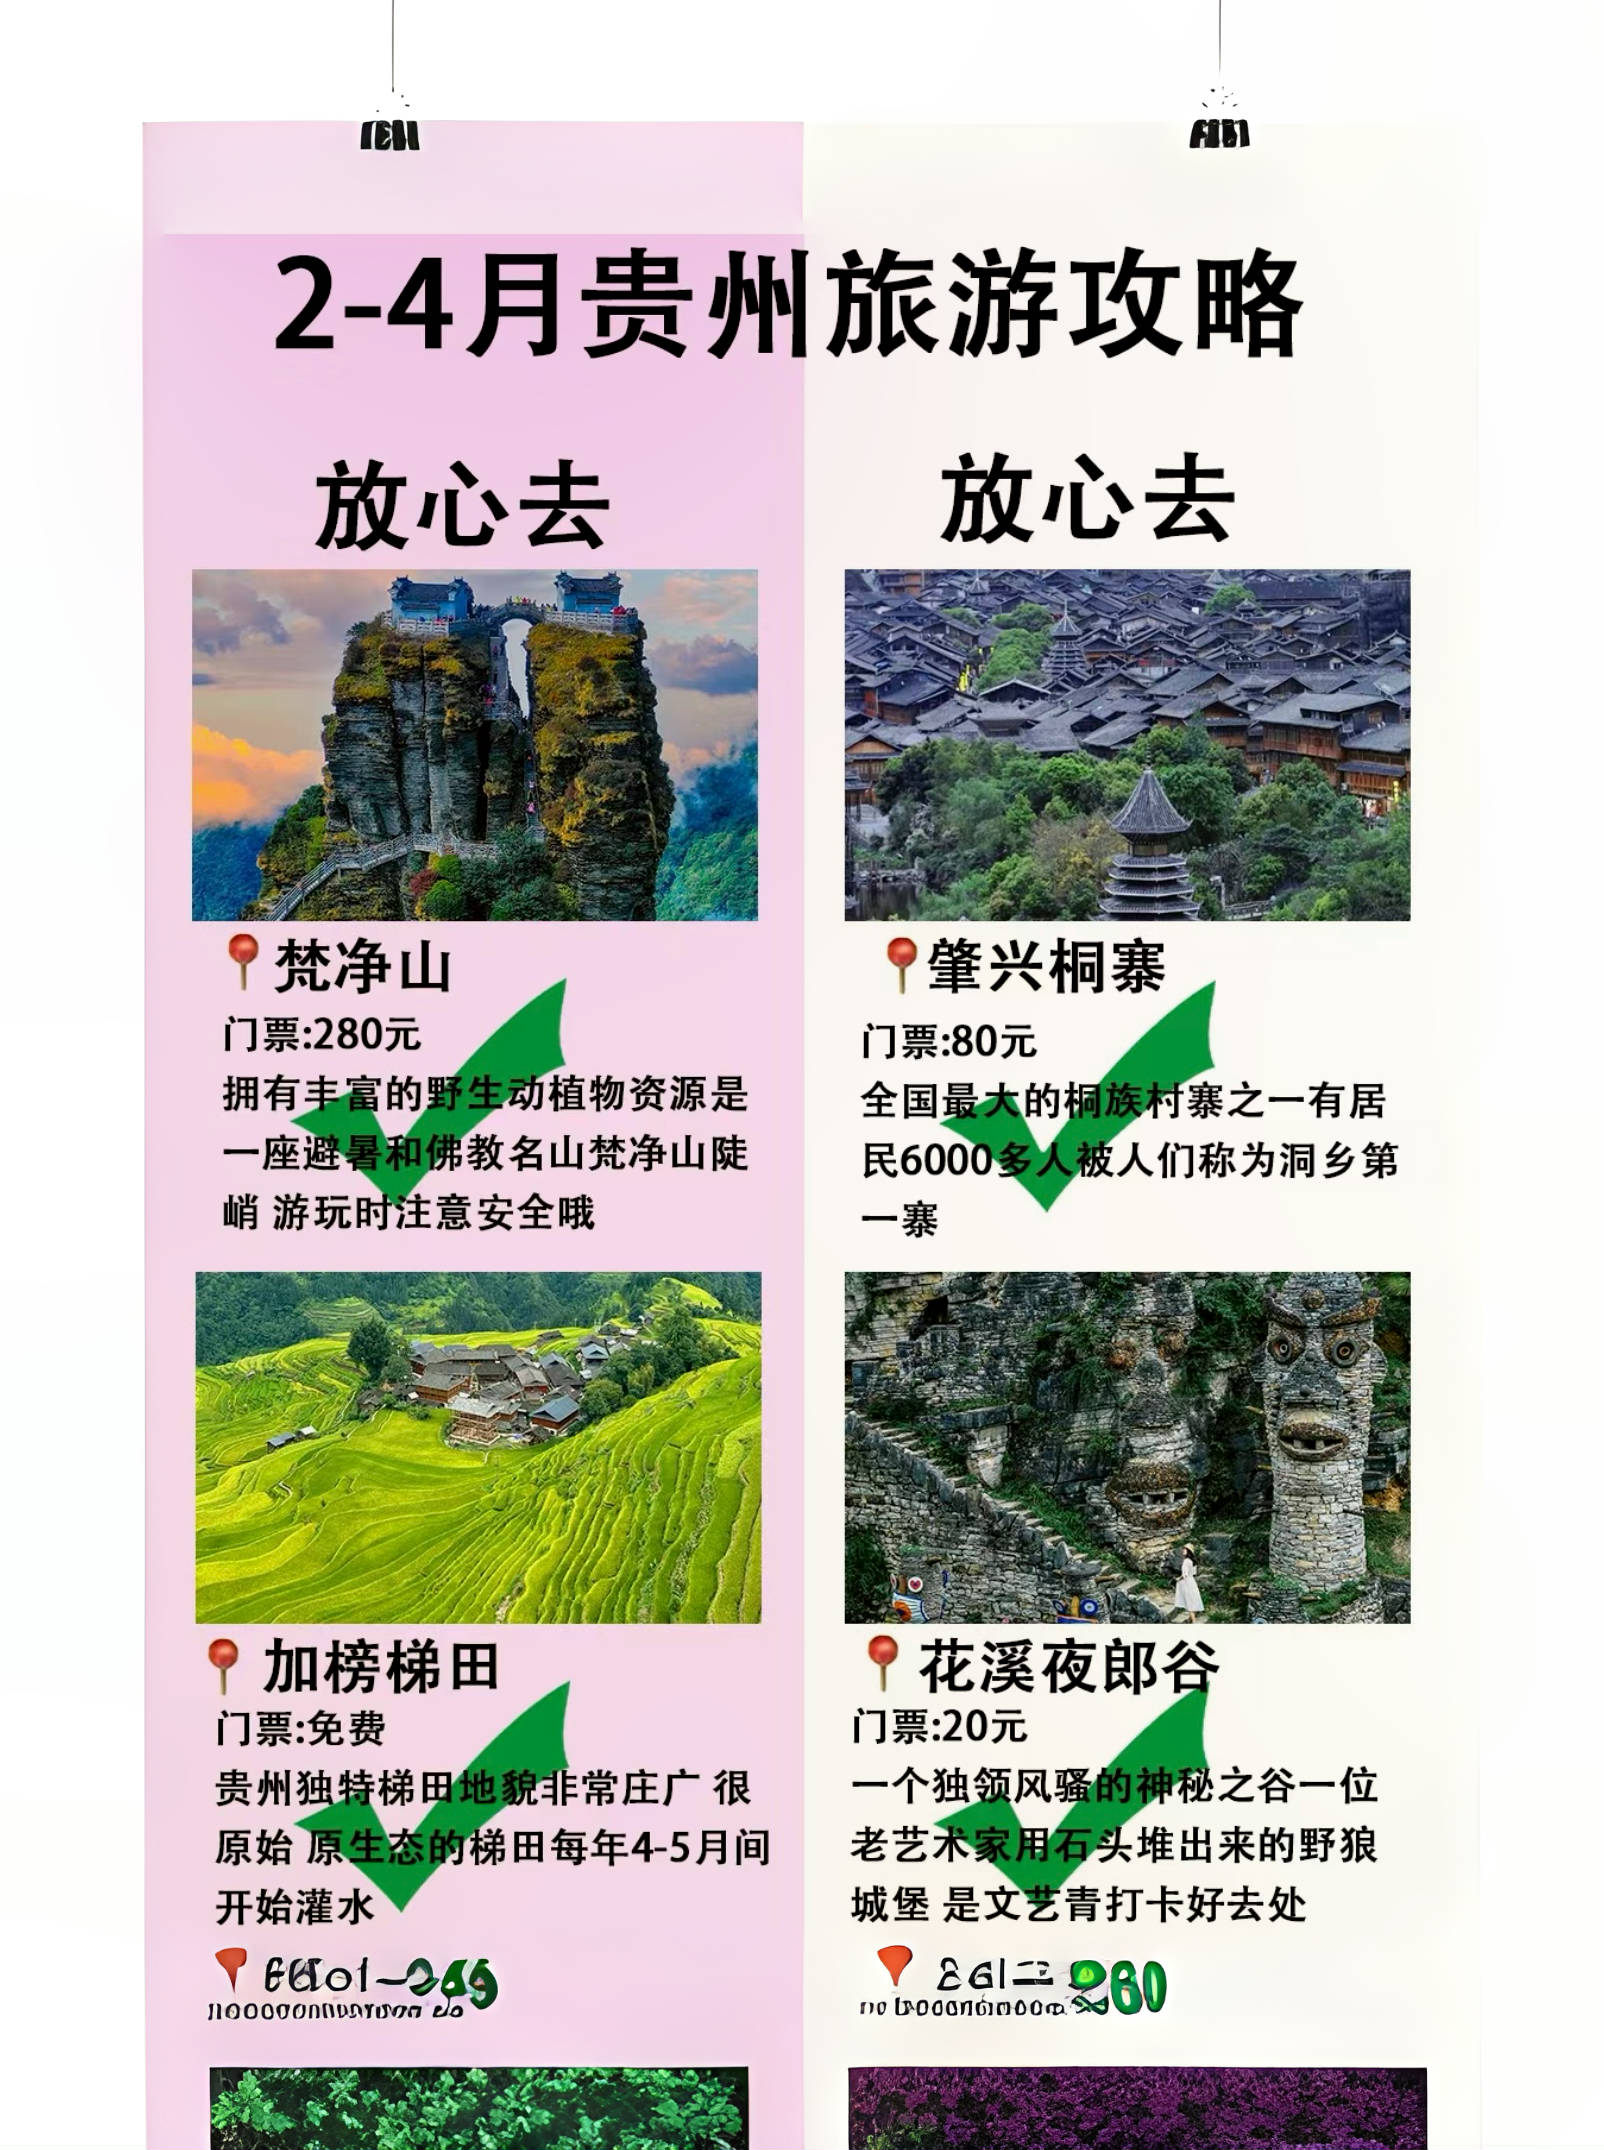 2-4月来贵州旅游 新手小白必备攻略 准备计划来贵州旅游的姐妹们解 不想自己花时间做攻略的了快来抄作